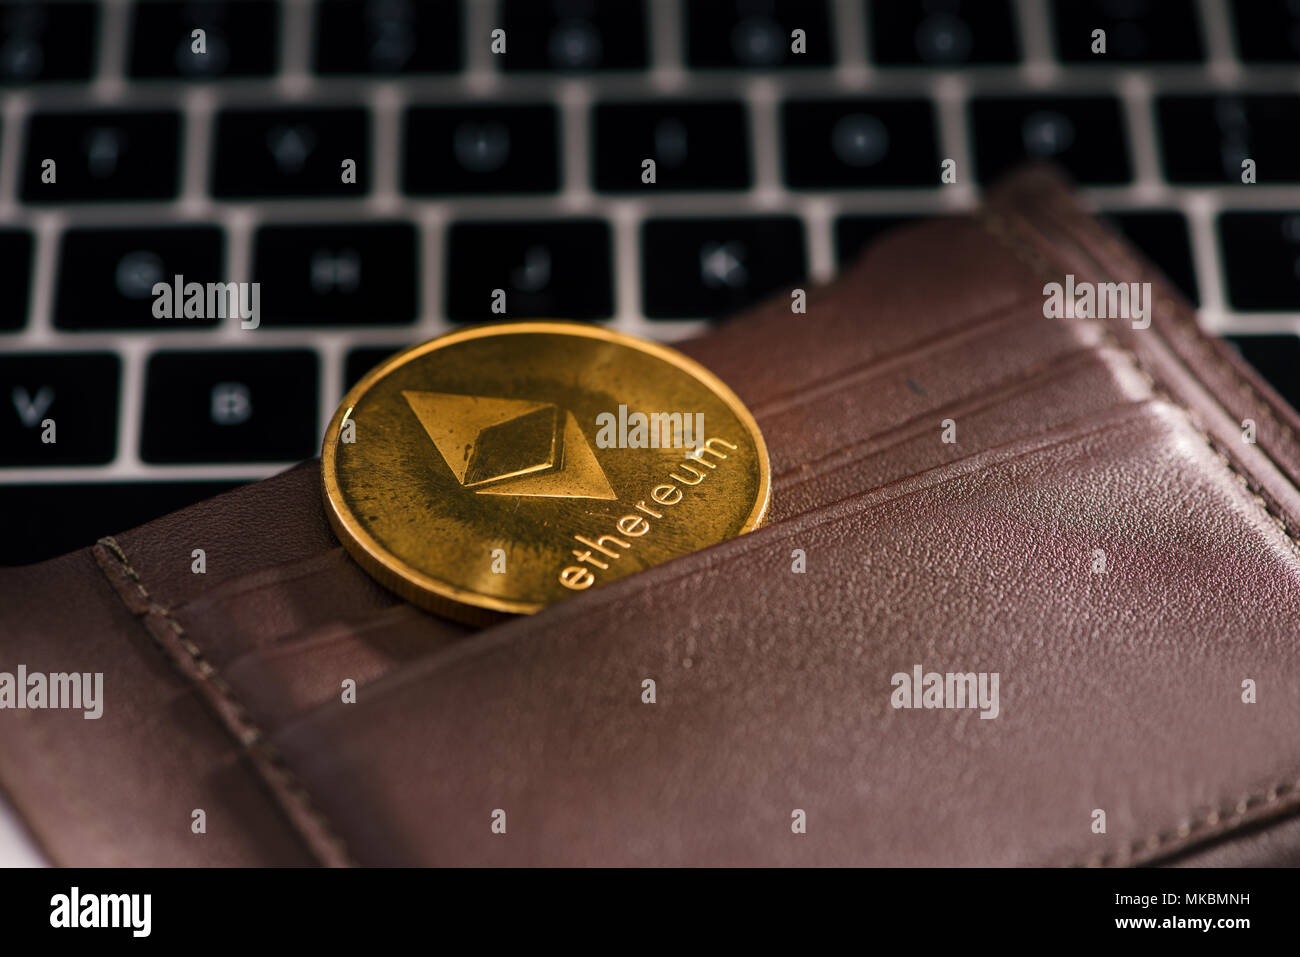 Moneta virtuale wallet. Ethereum moneta in oro. Concetto Cryptocurrency. Foto Stock